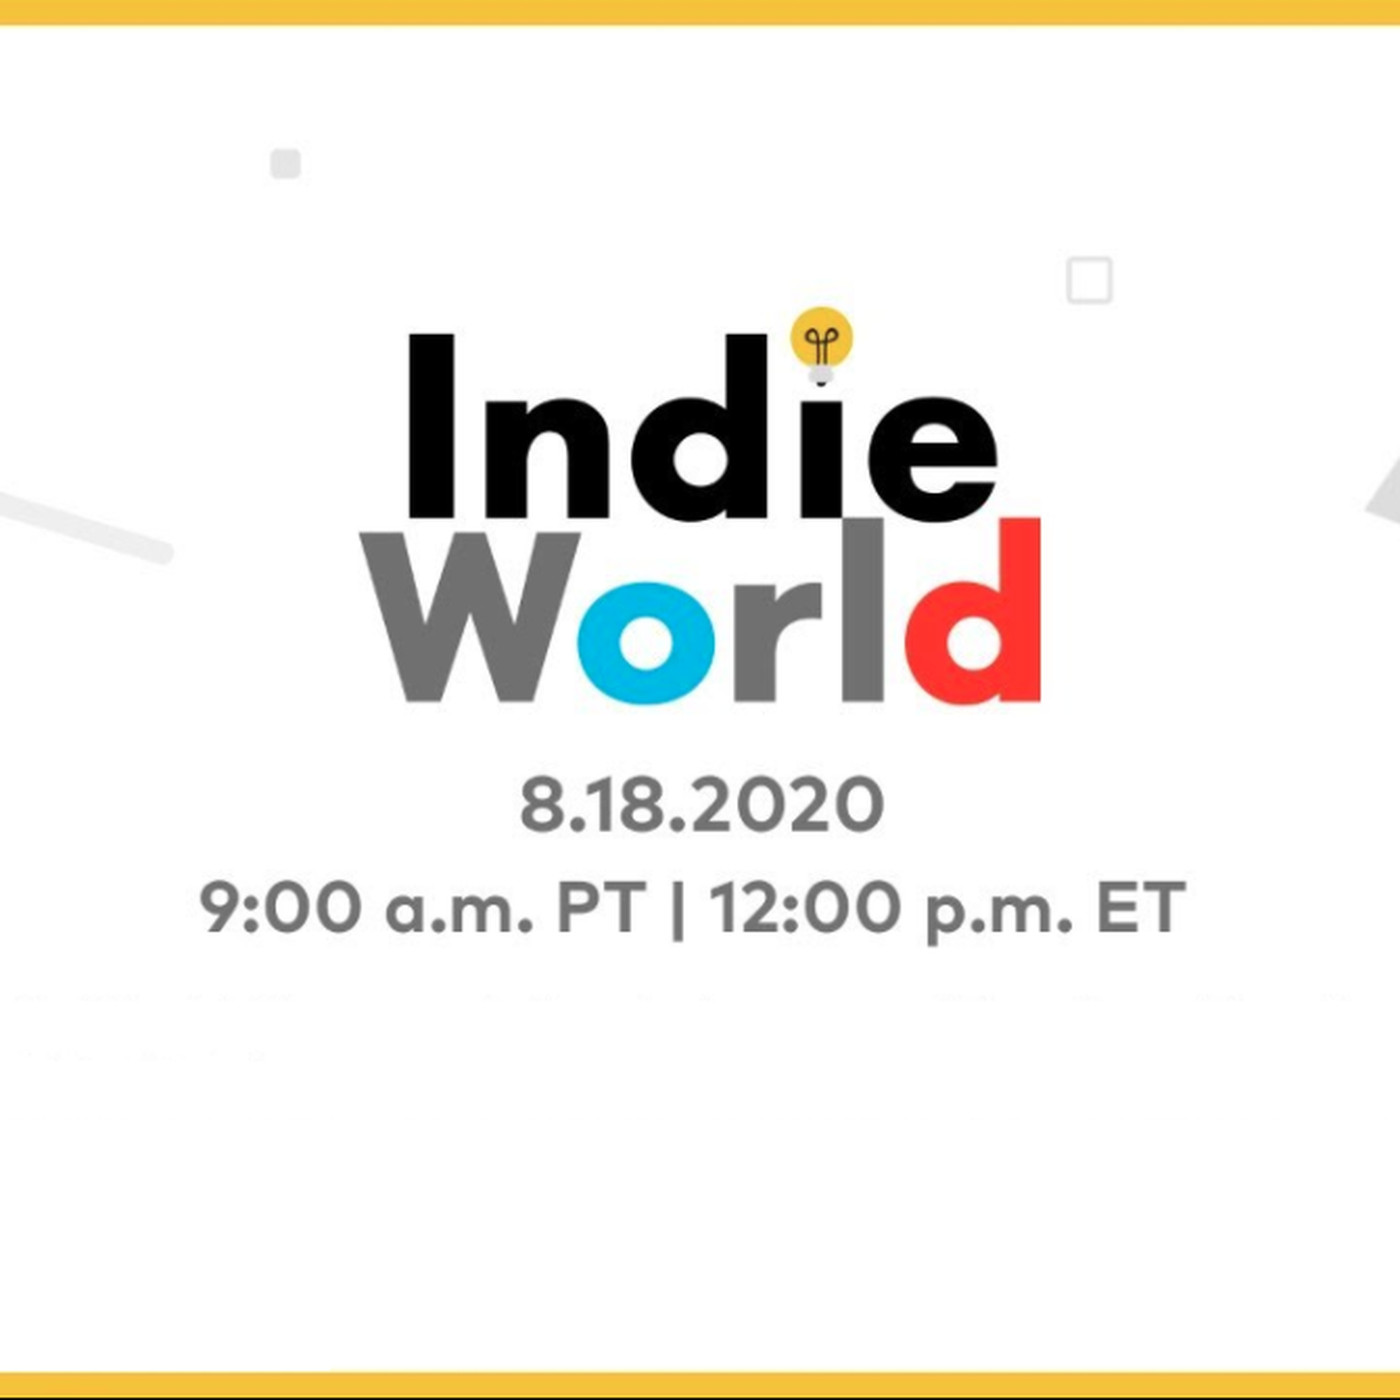 Nintendo Indie World Stream